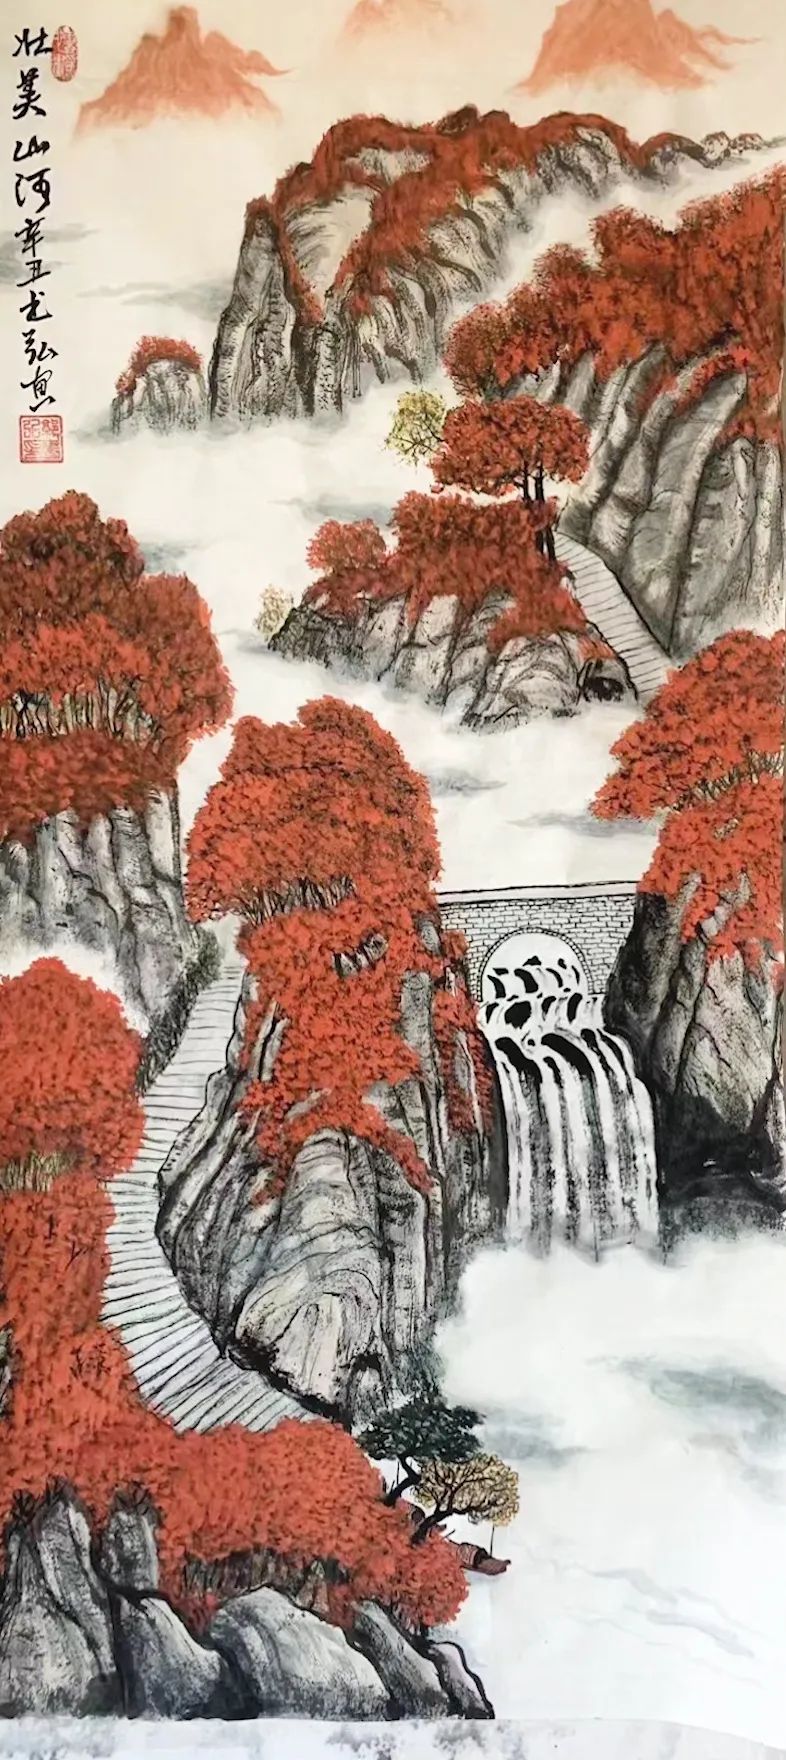 郭润民 | 艺术为人民——中国当代书画名家优秀作品展